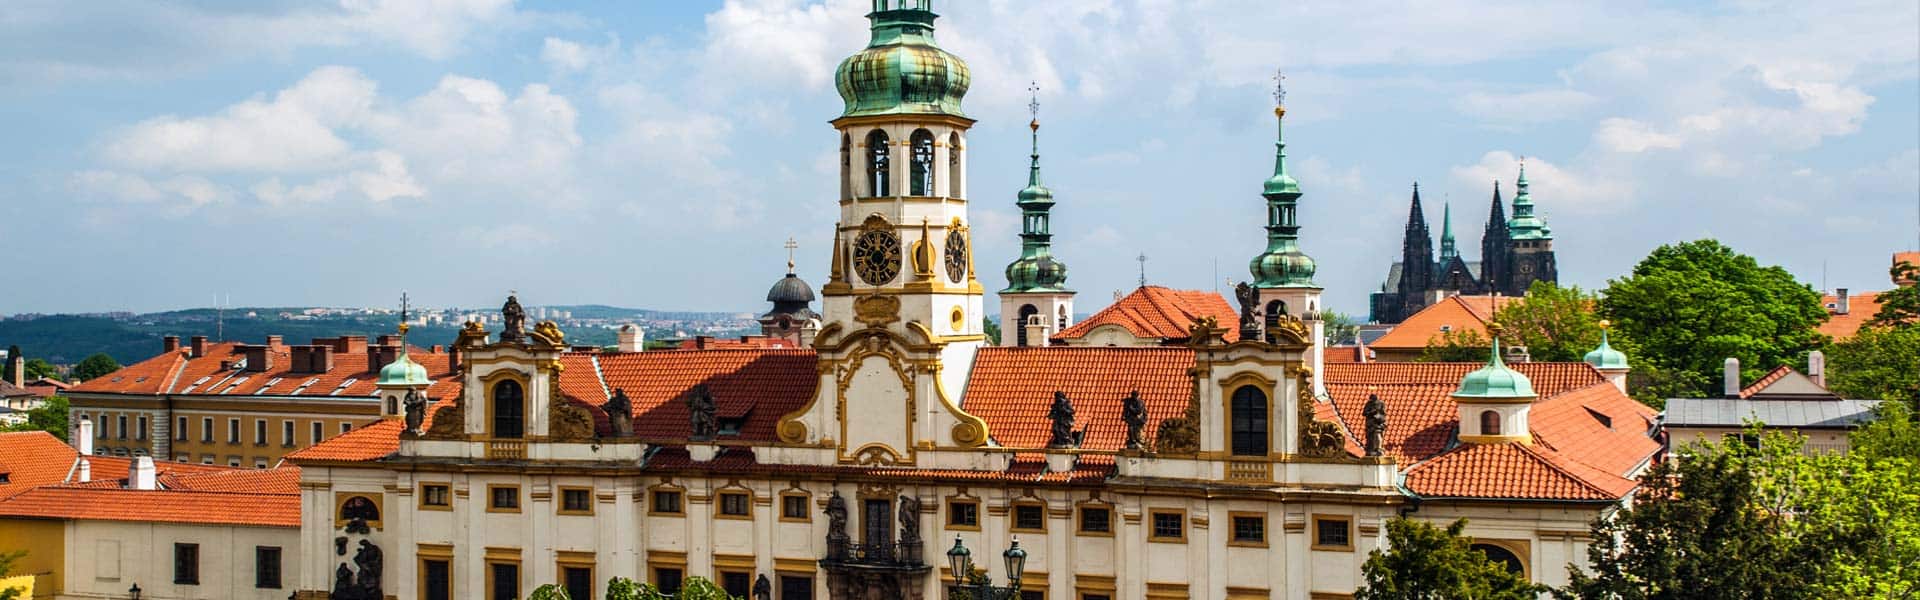 Historisches Kapuzinerkloster: Loreto in Prag